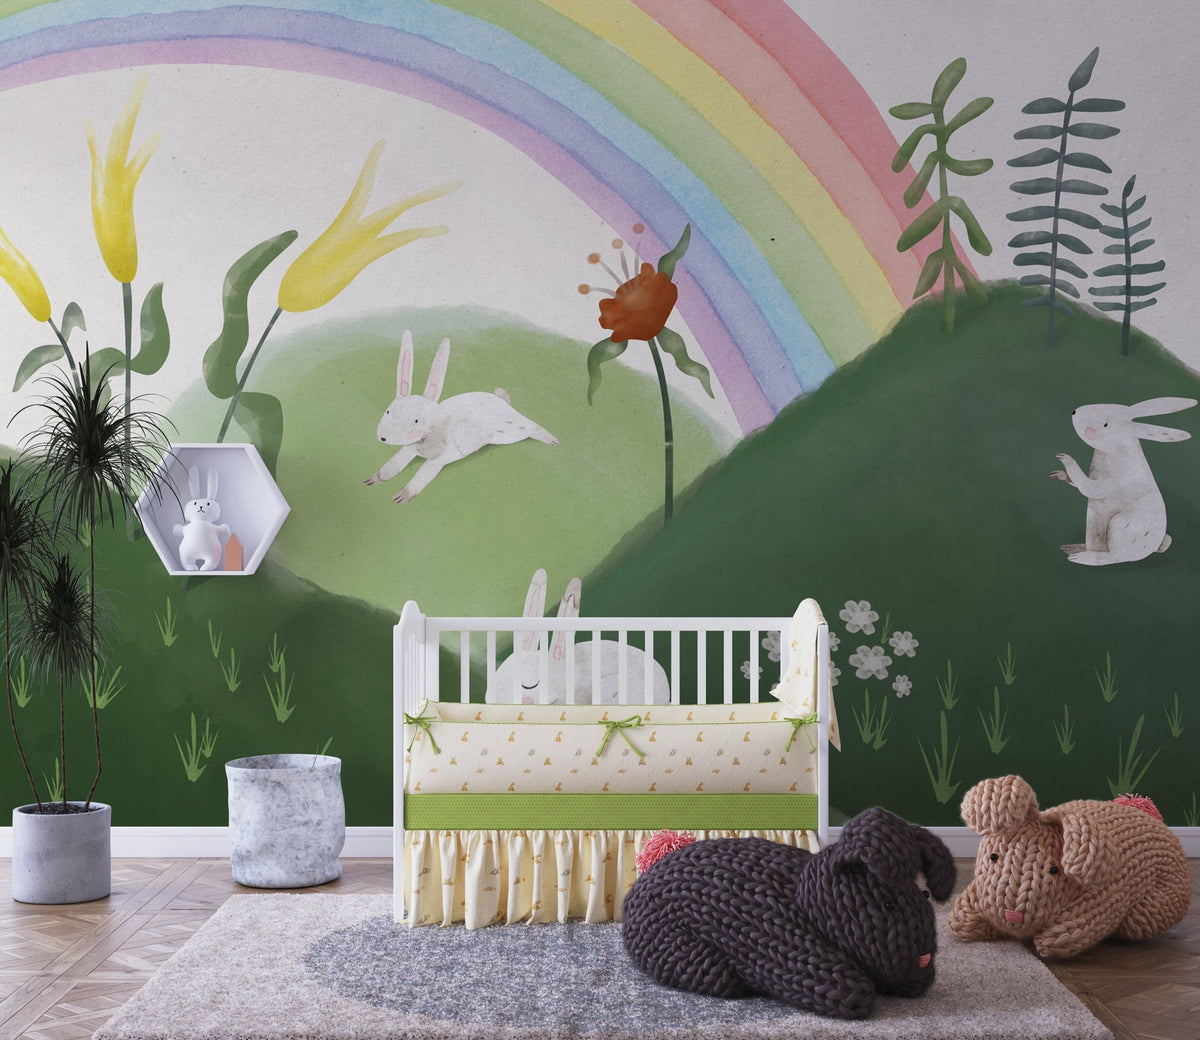 Rabbit in Garden - Kids Room Wallpaper Mural